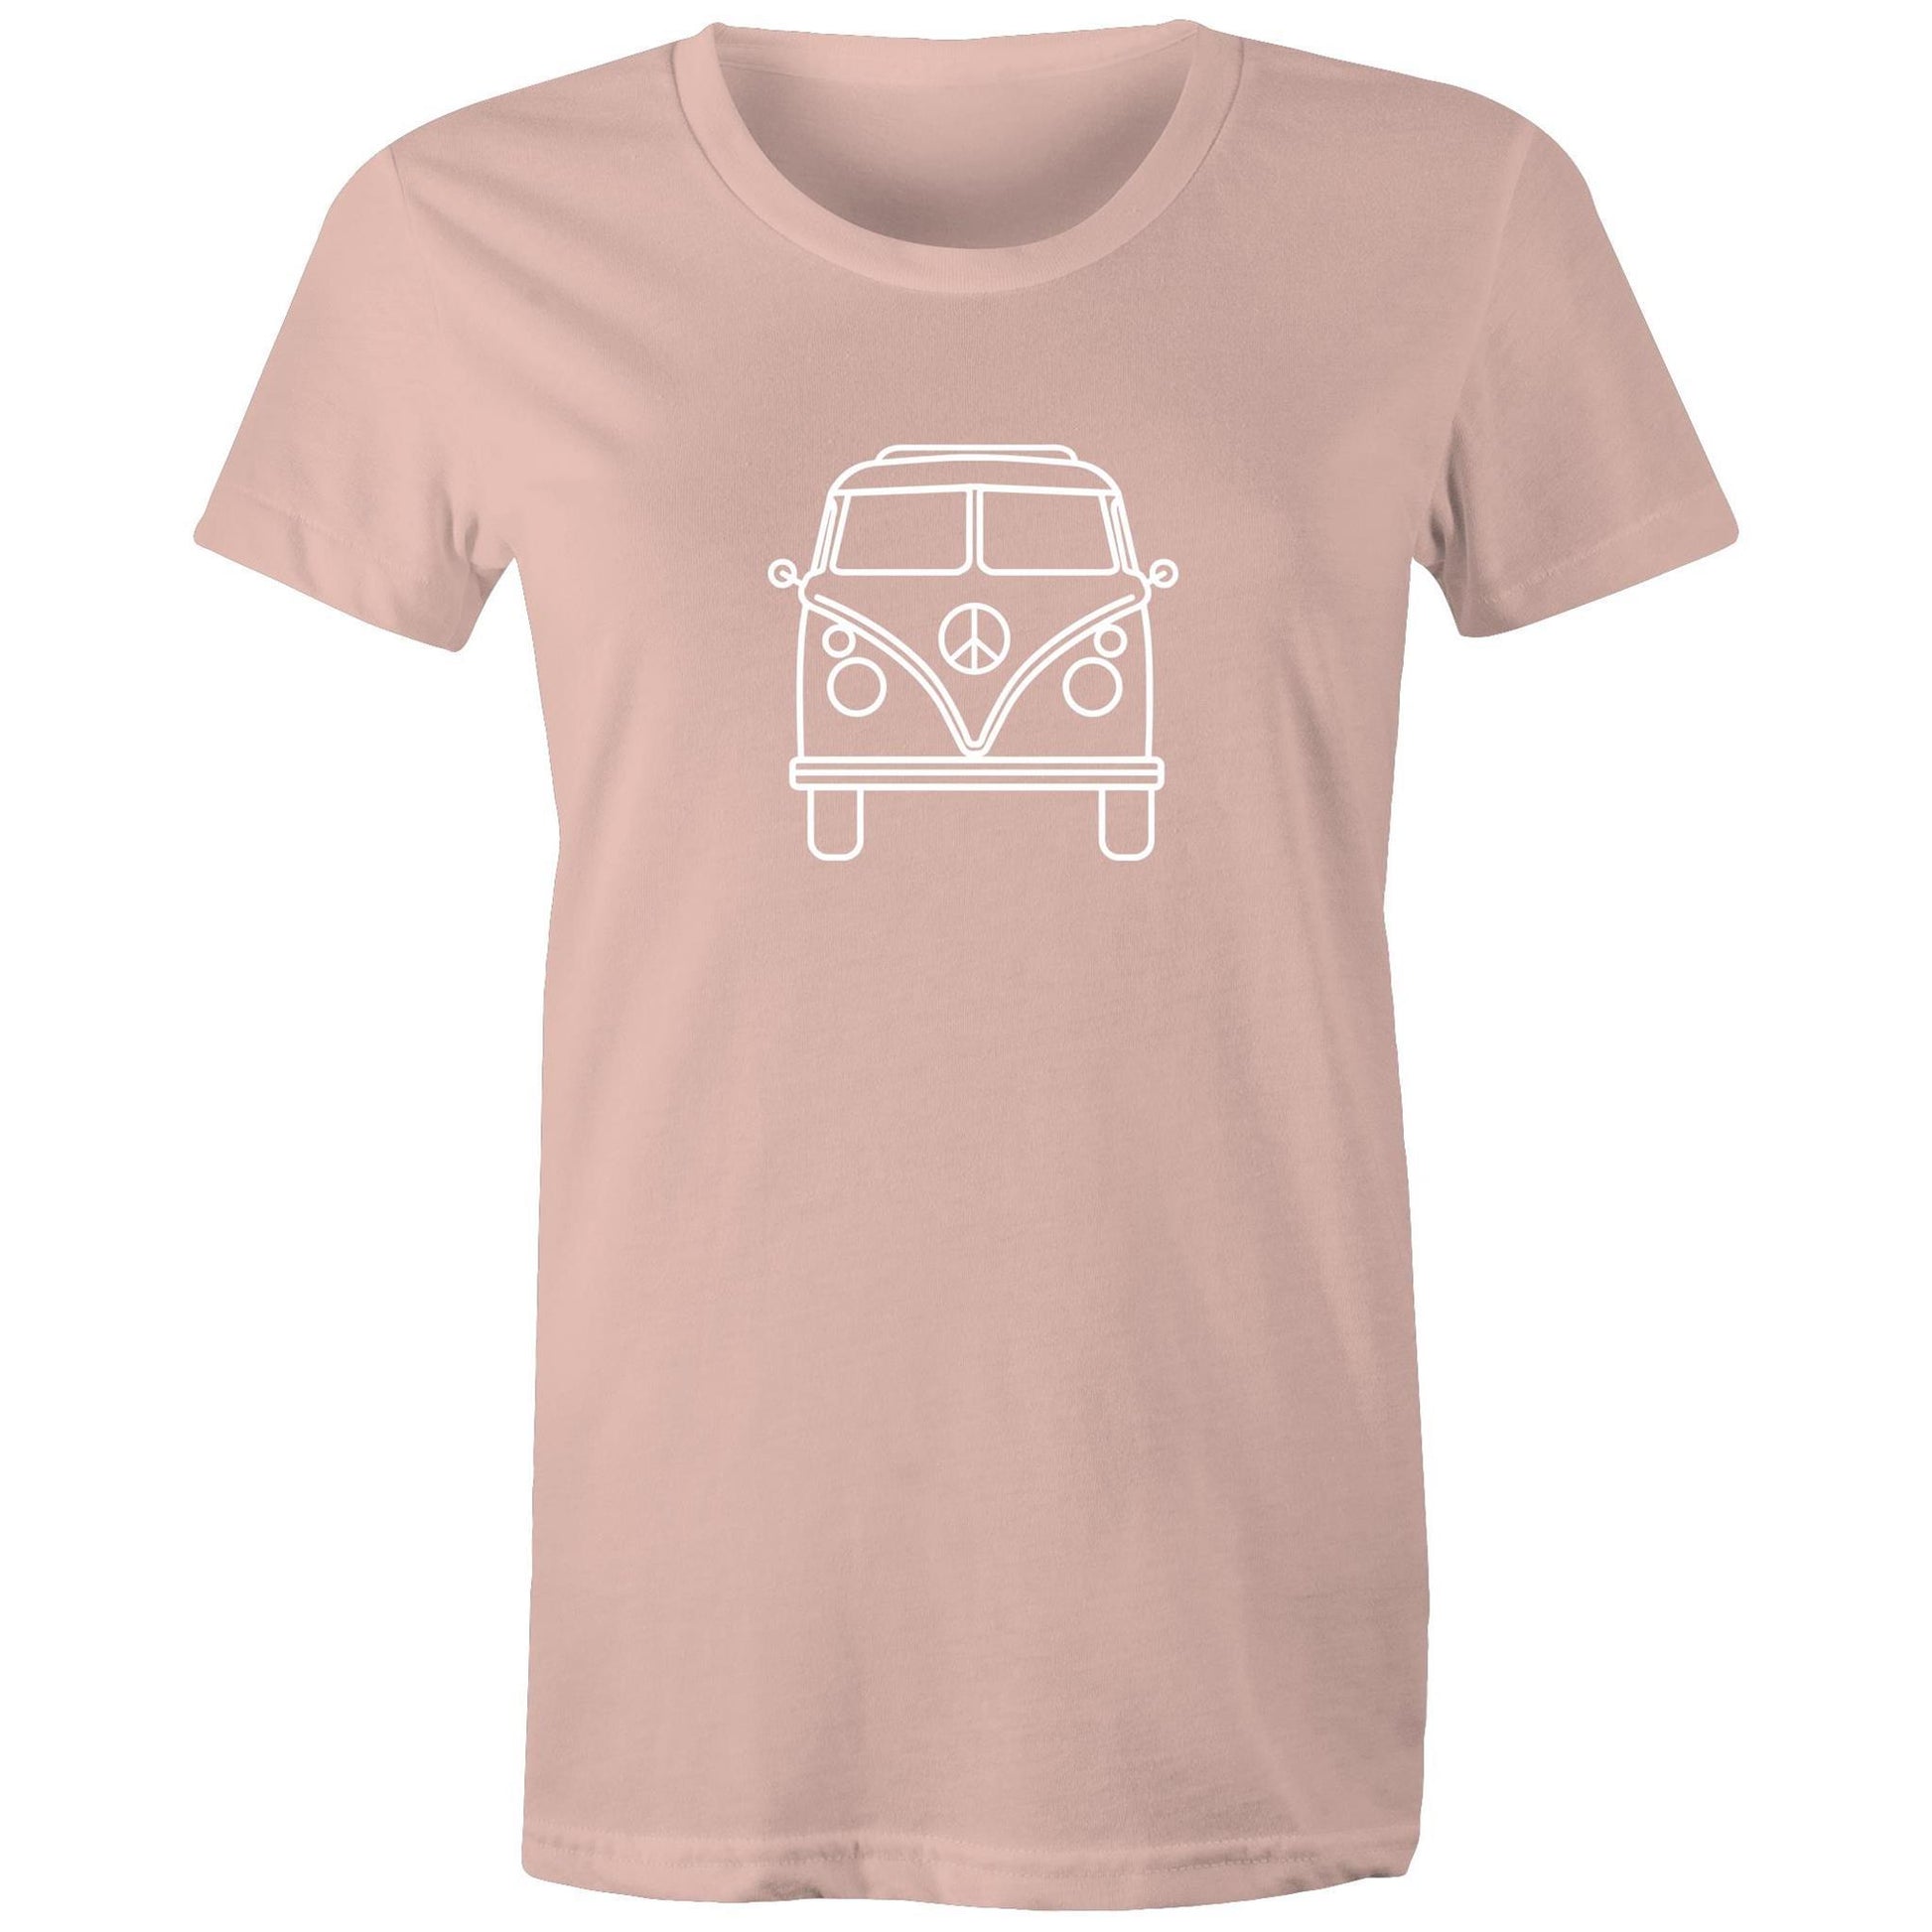 Beach Van - Women's T-shirt Pale Pink Womens T-shirt Retro Summer Surf Womens